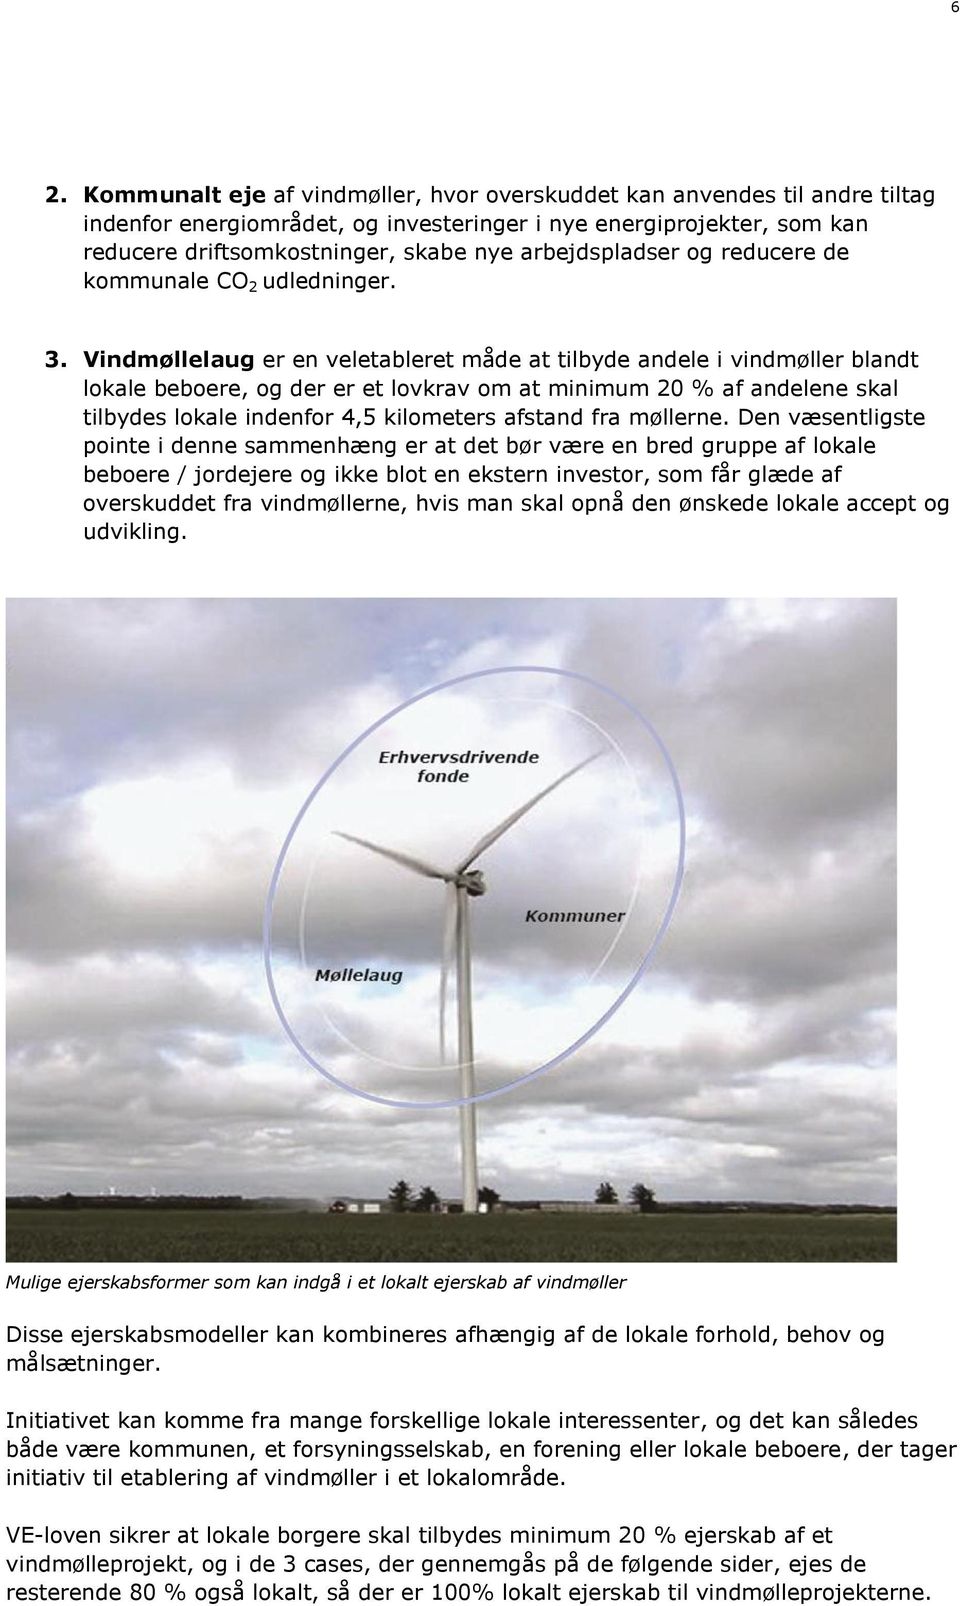 Vindmøllelaug er en veletableret måde at tilbyde andele i vindmøller blandt lokale beboere, og der er et lovkrav om at minimum 20 % af andelene skal tilbydes lokale indenfor 4,5 kilometers afstand